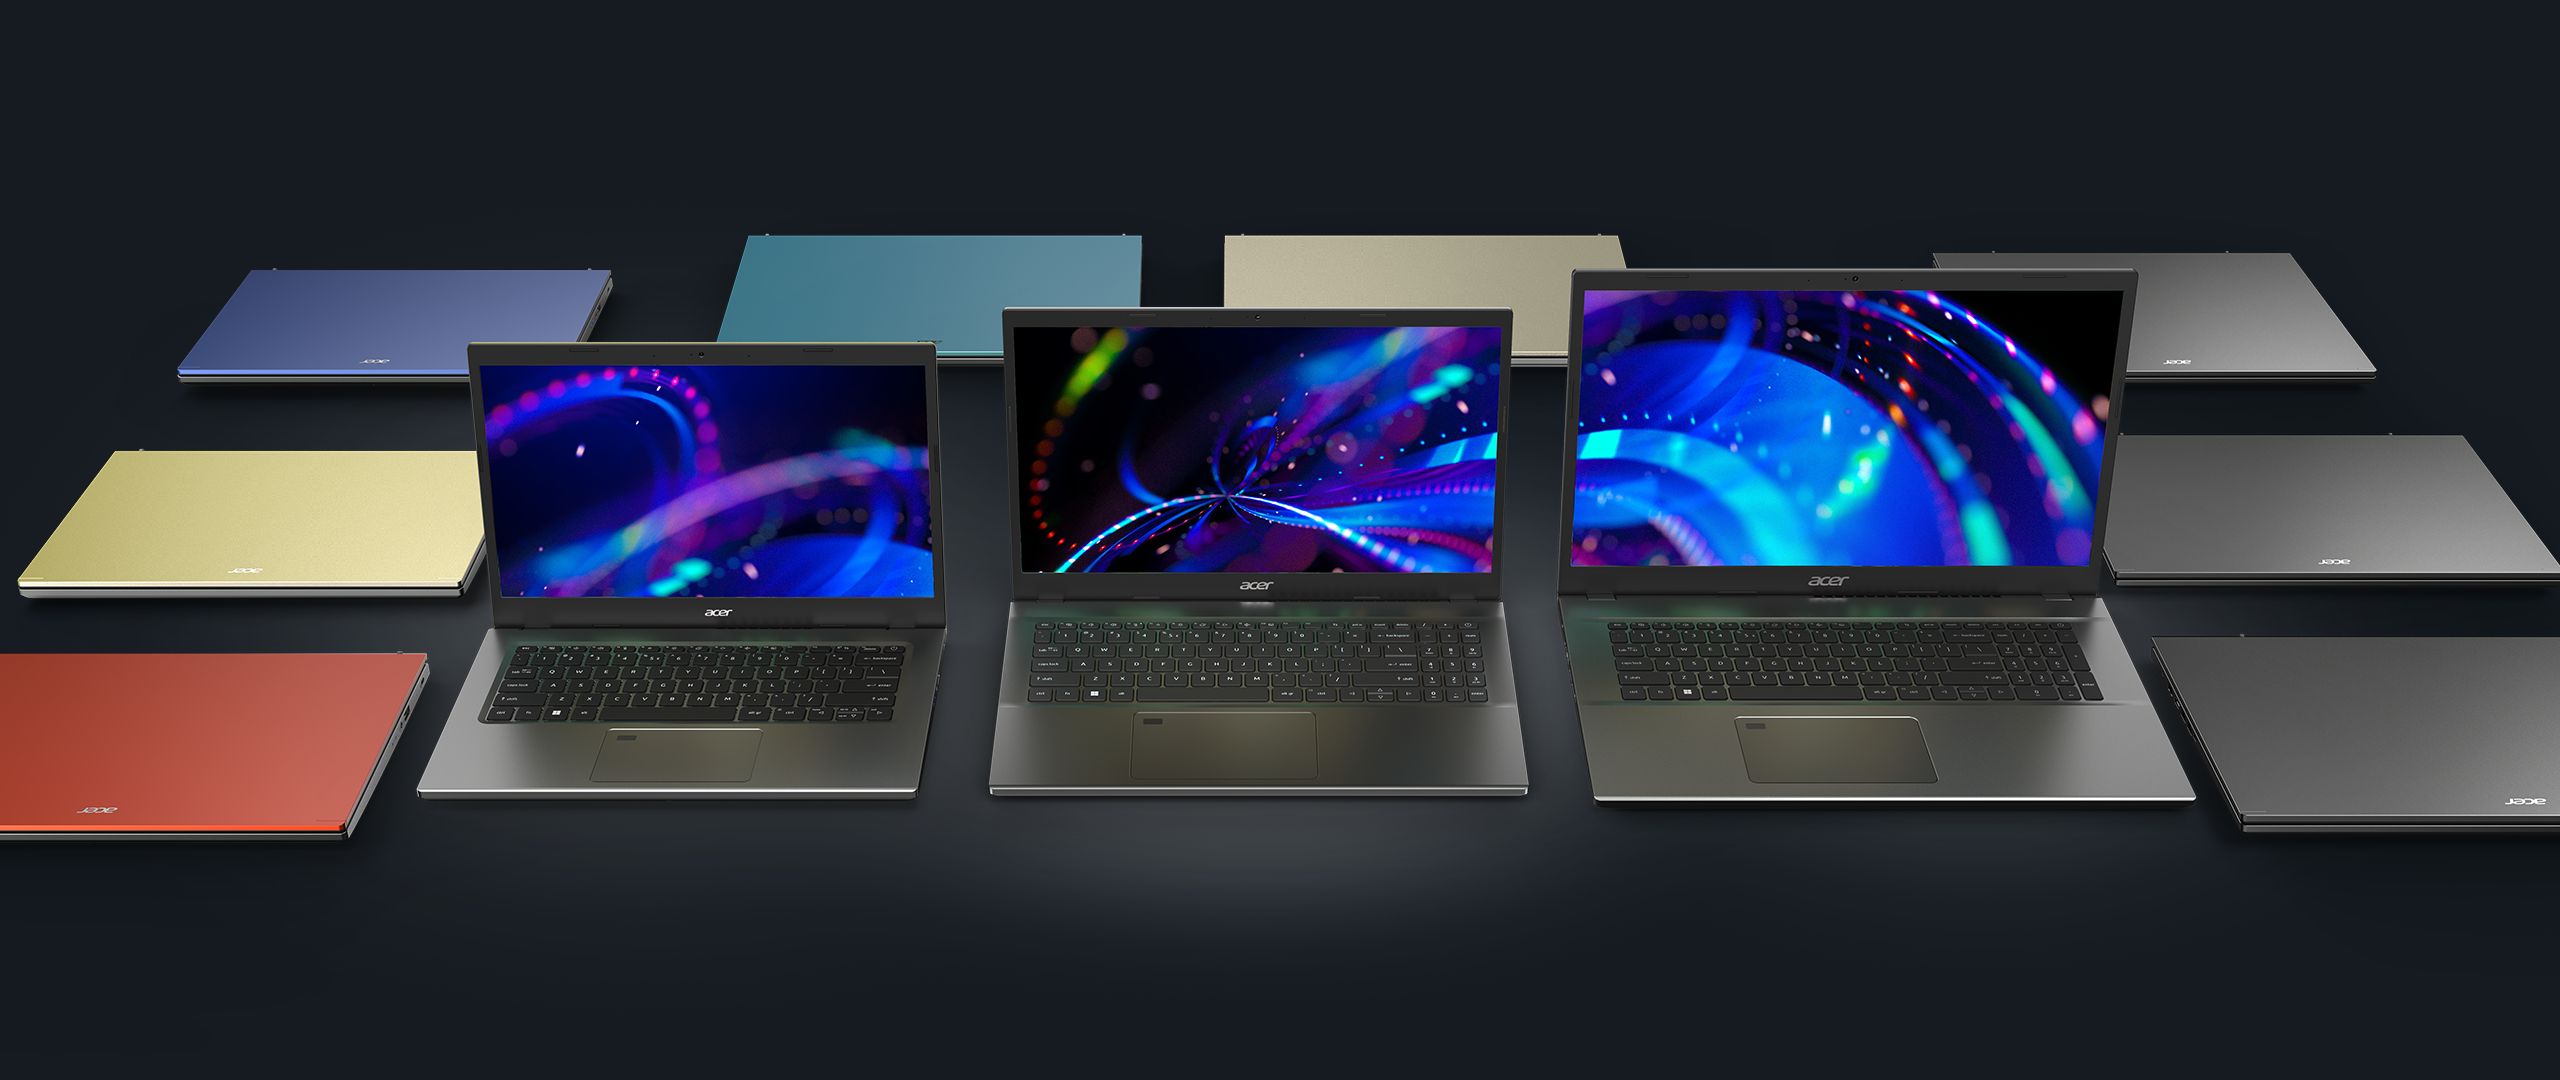 acer-laptop-aspire-5-the-design-ksp-6